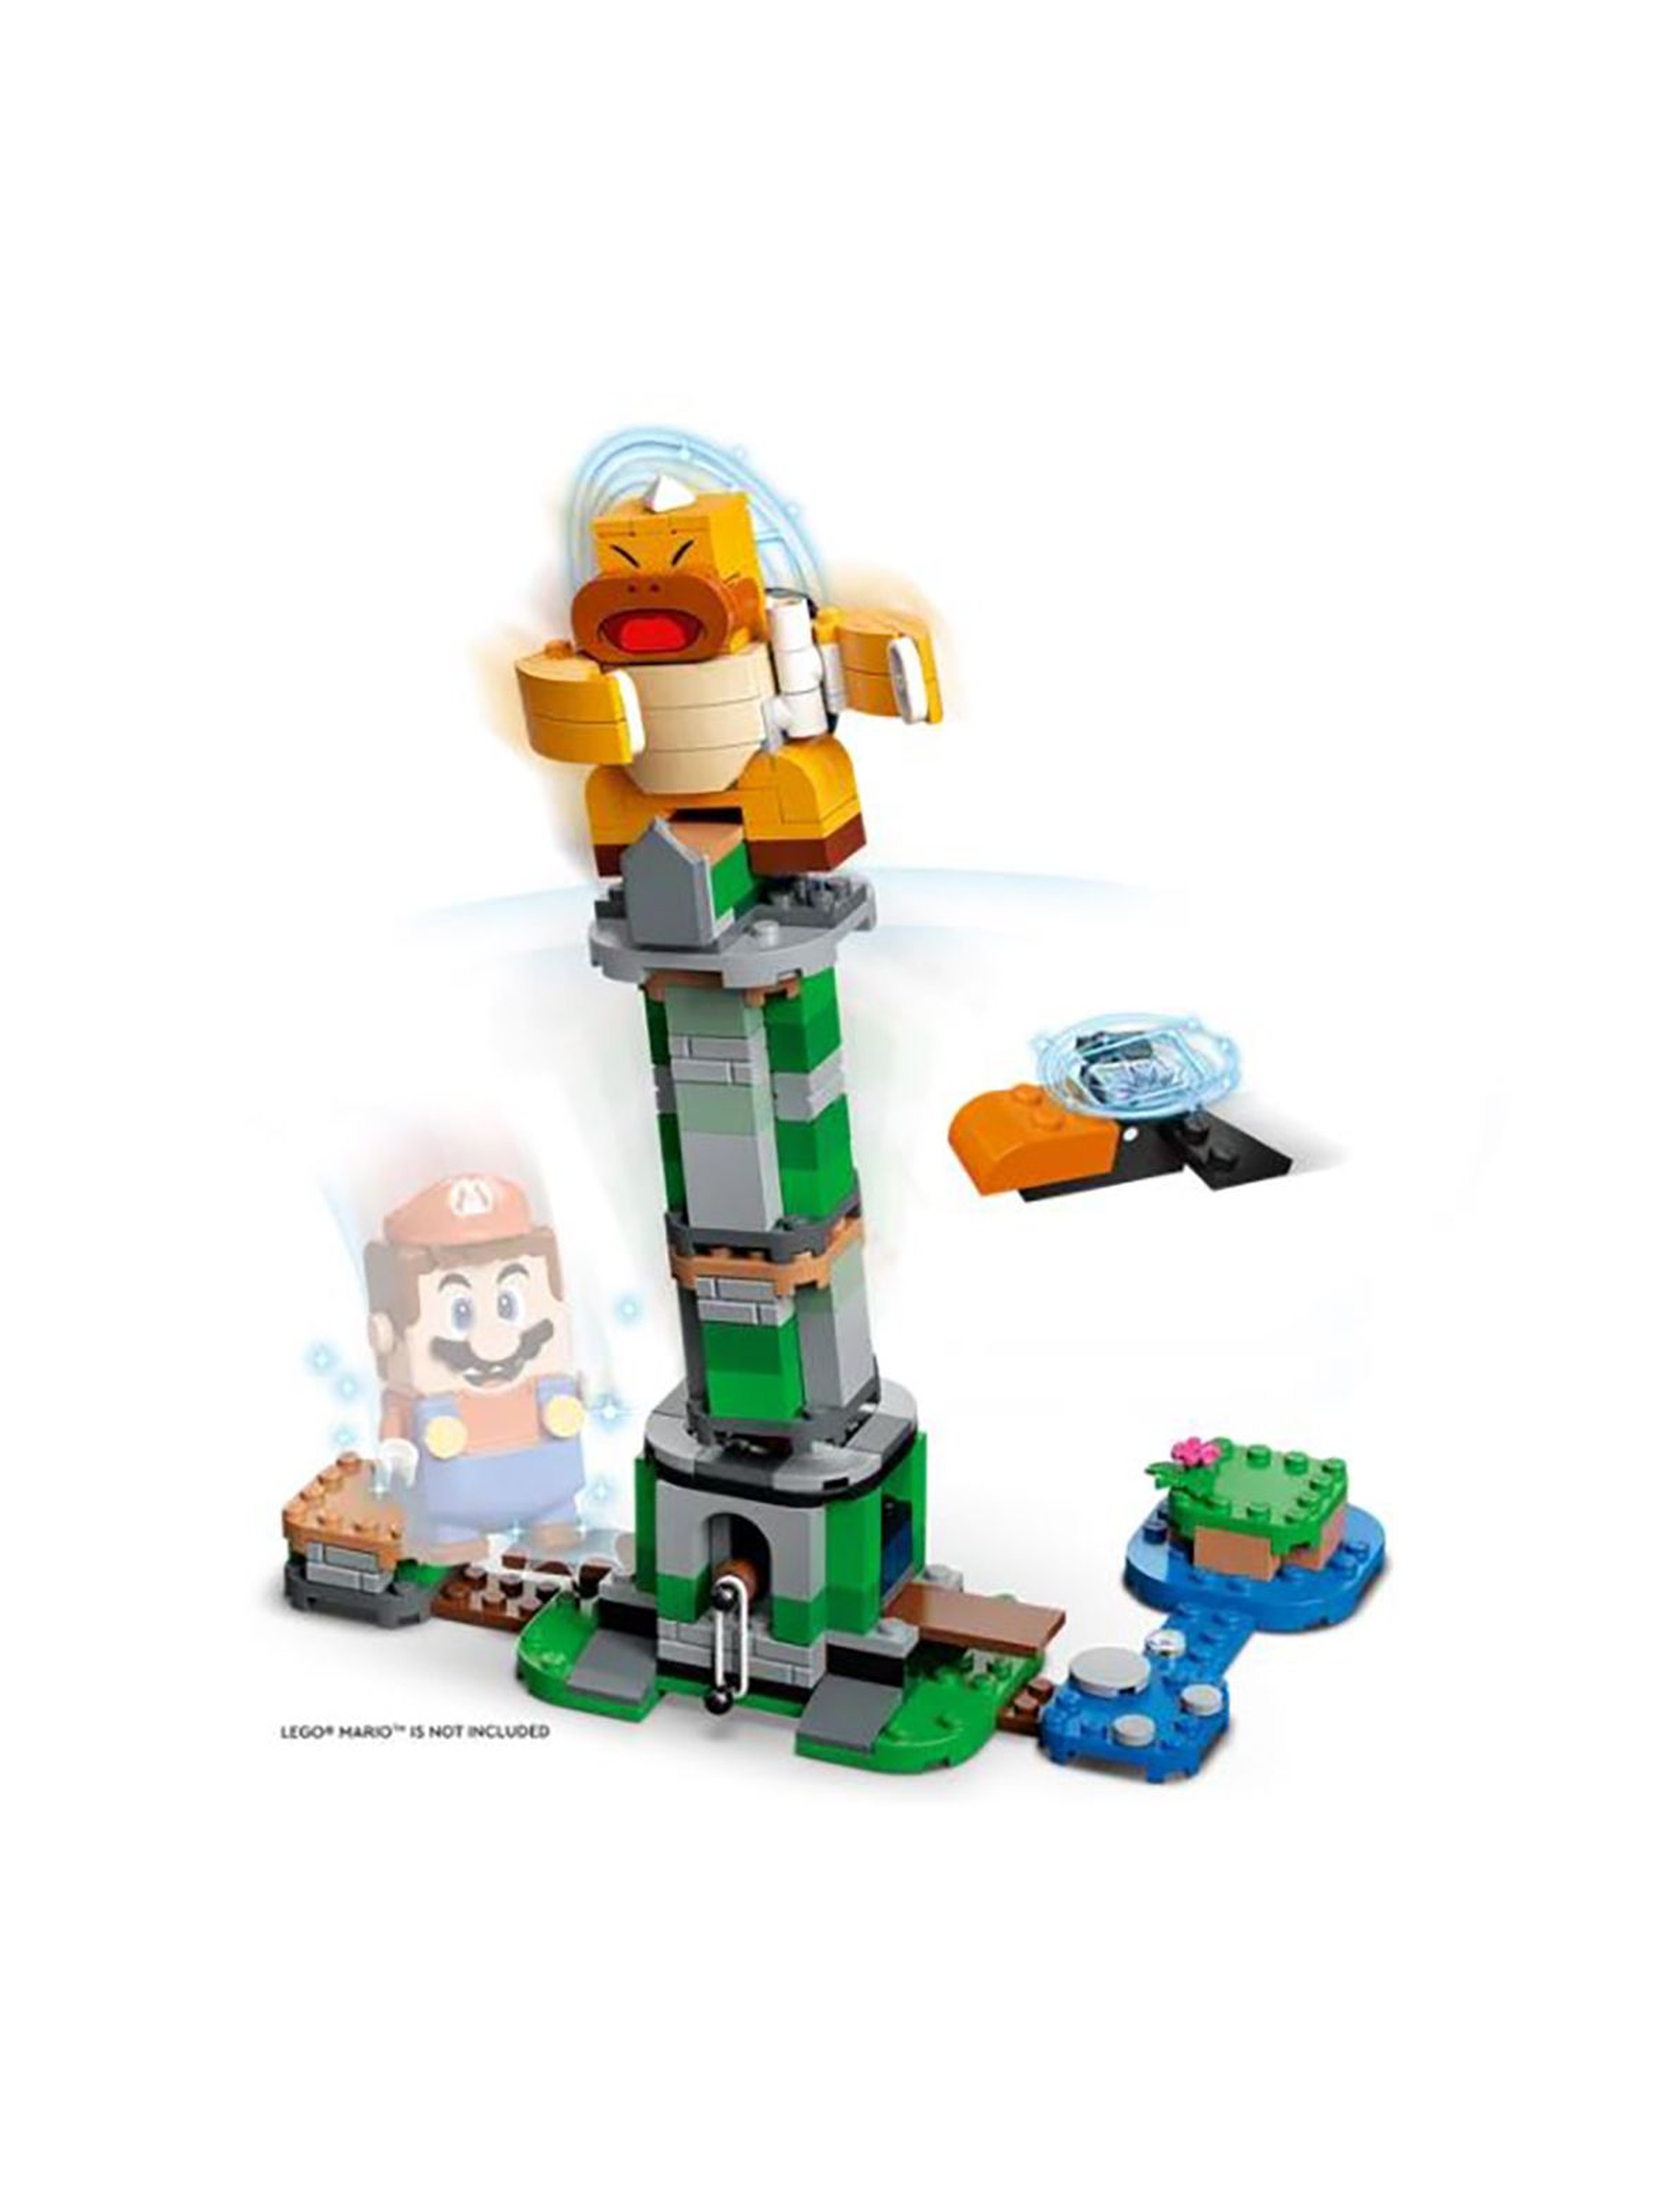 Klocki Lego Boss Sumo Bro i przewracana wieża wiek 6+